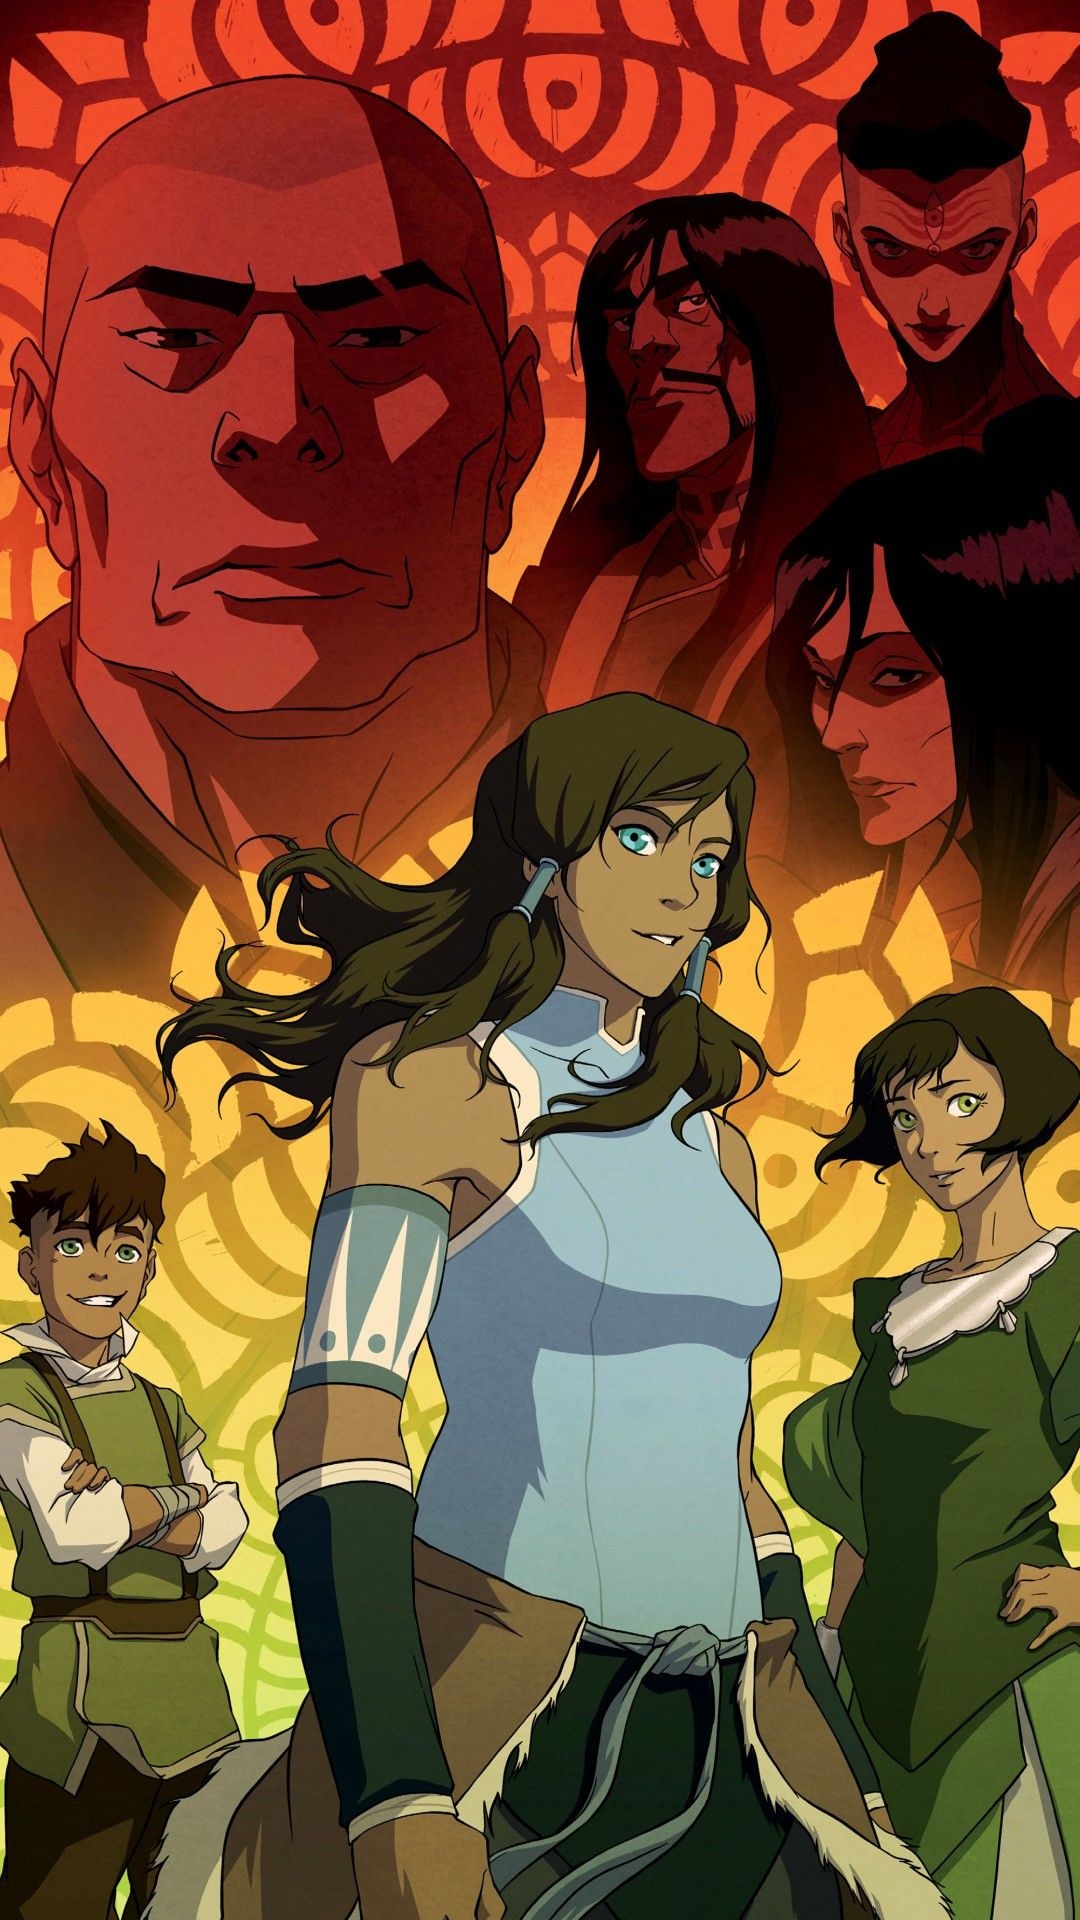 Legend of Korra poster, Book 3 art, Avatar sequel, Stunning visuals, 1080x1920 Full HD Handy